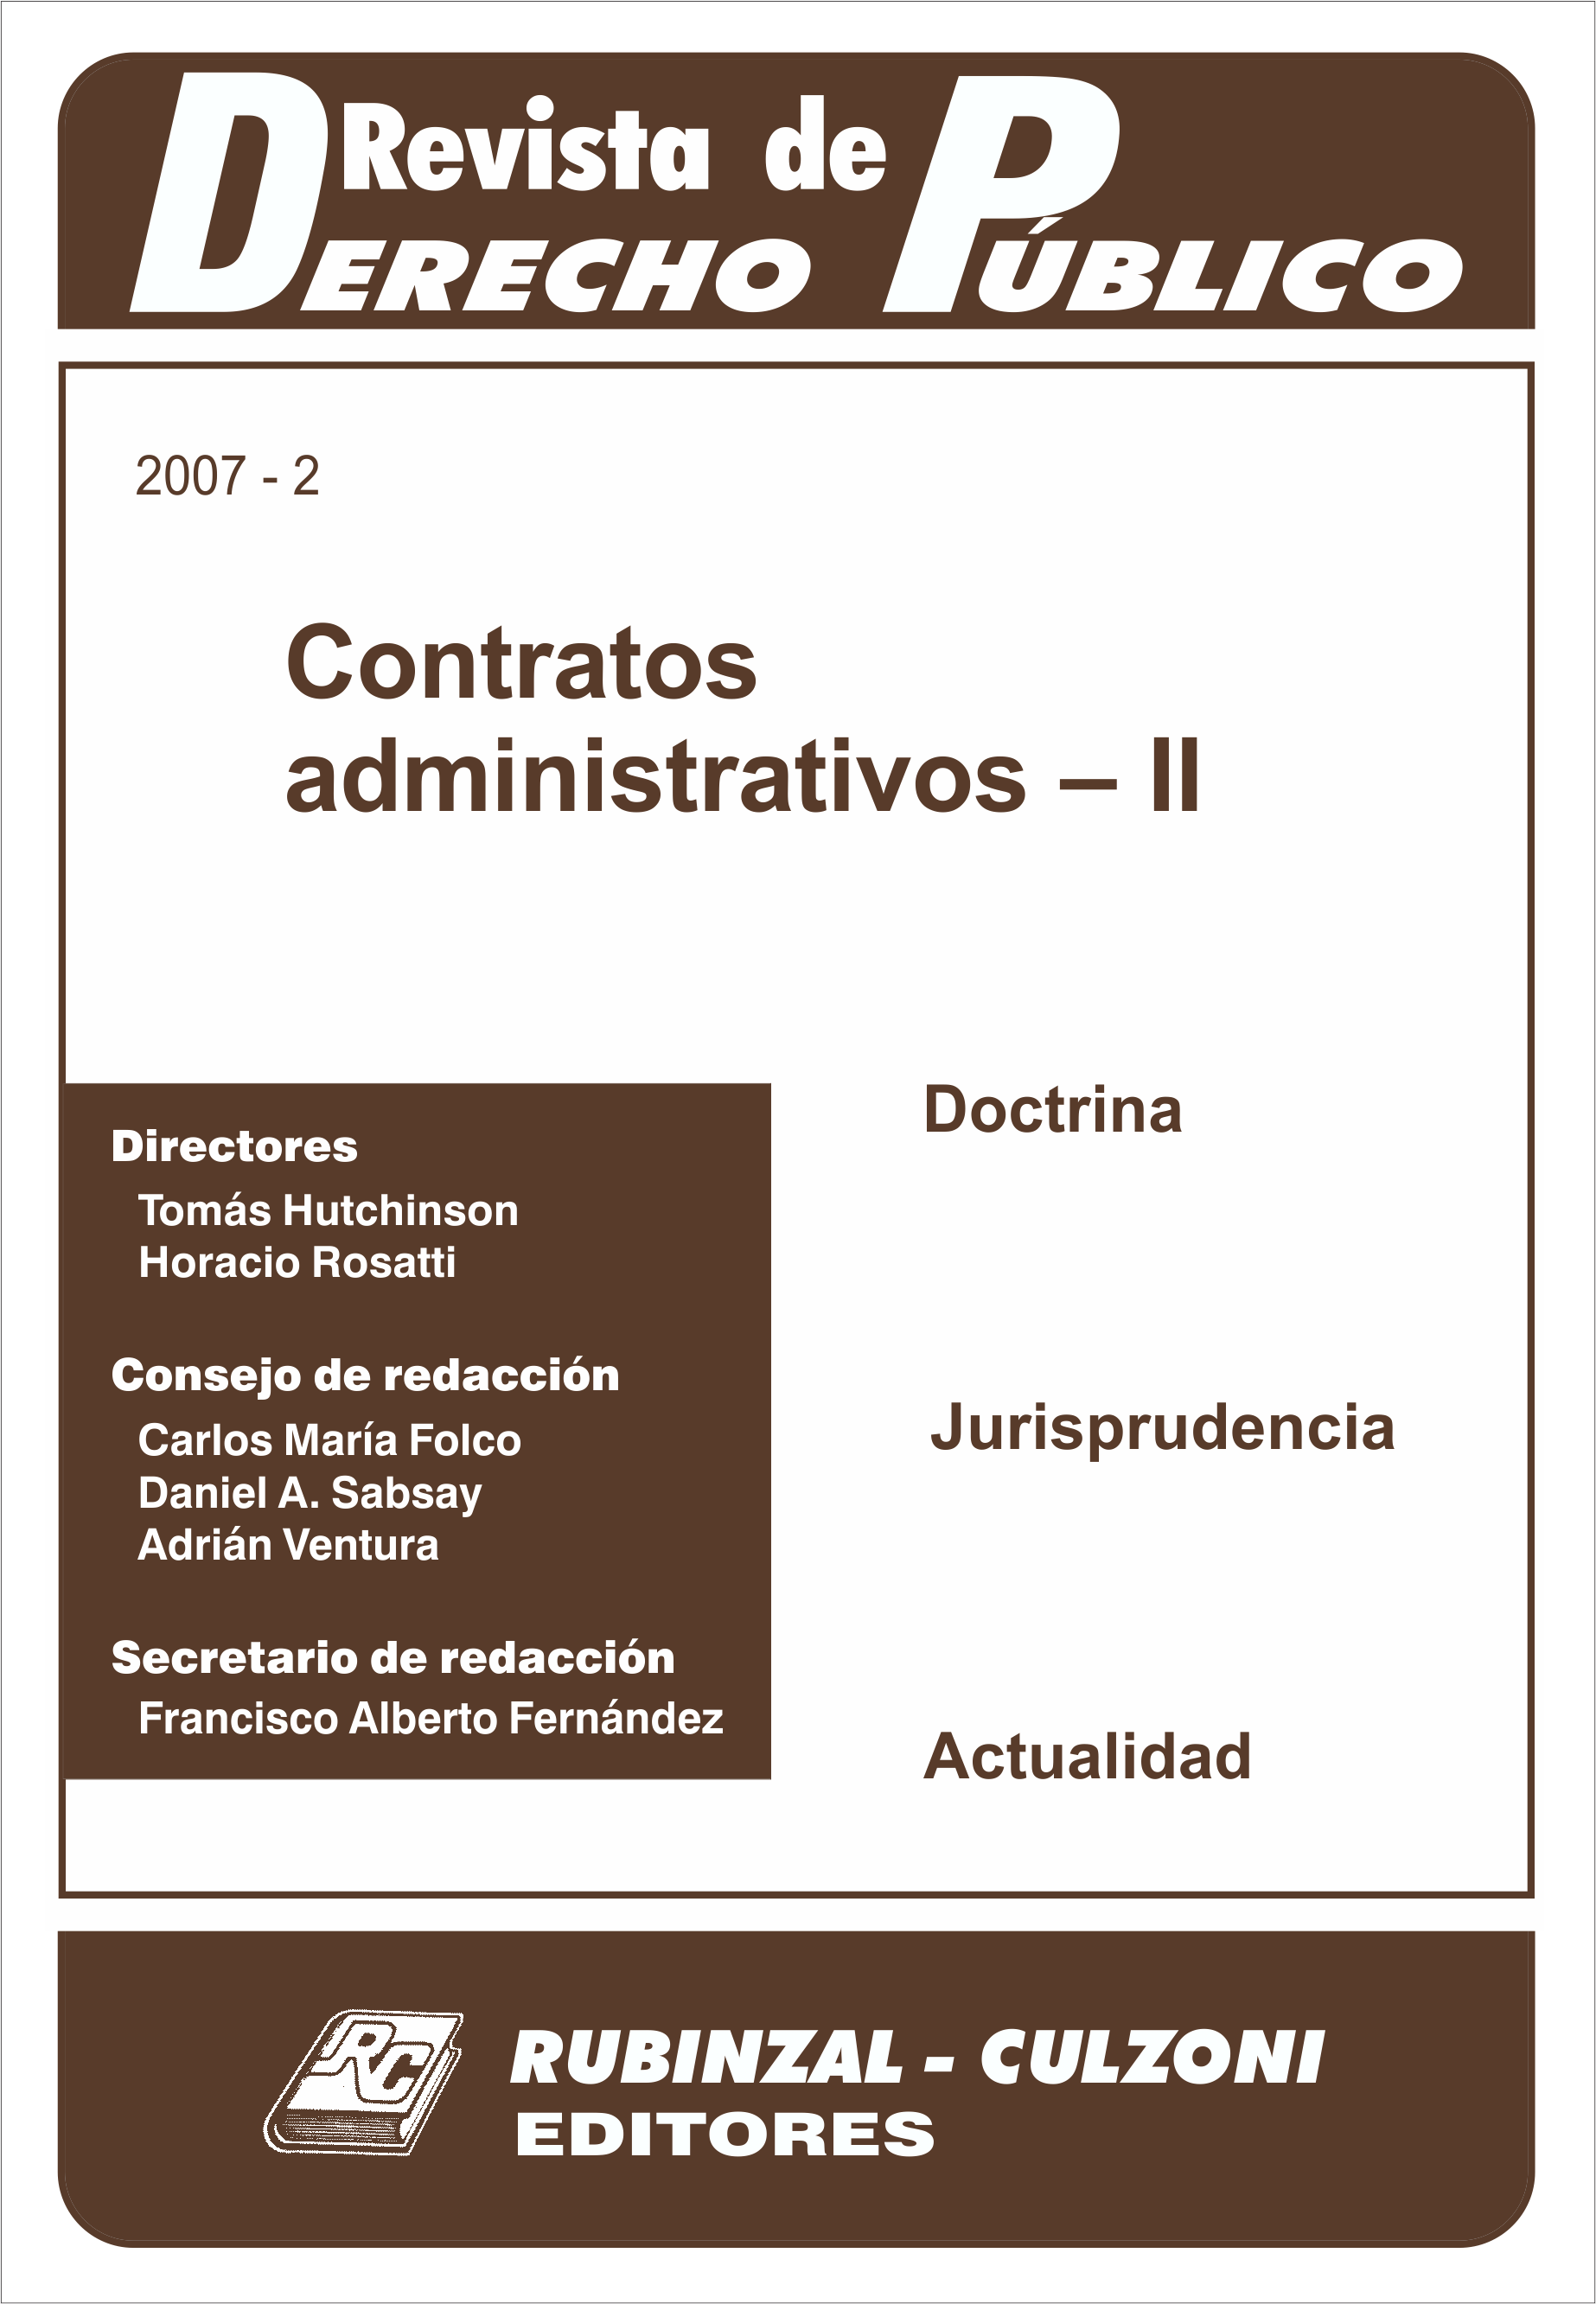 Revista de Derecho Público - Contratos administrativos - II